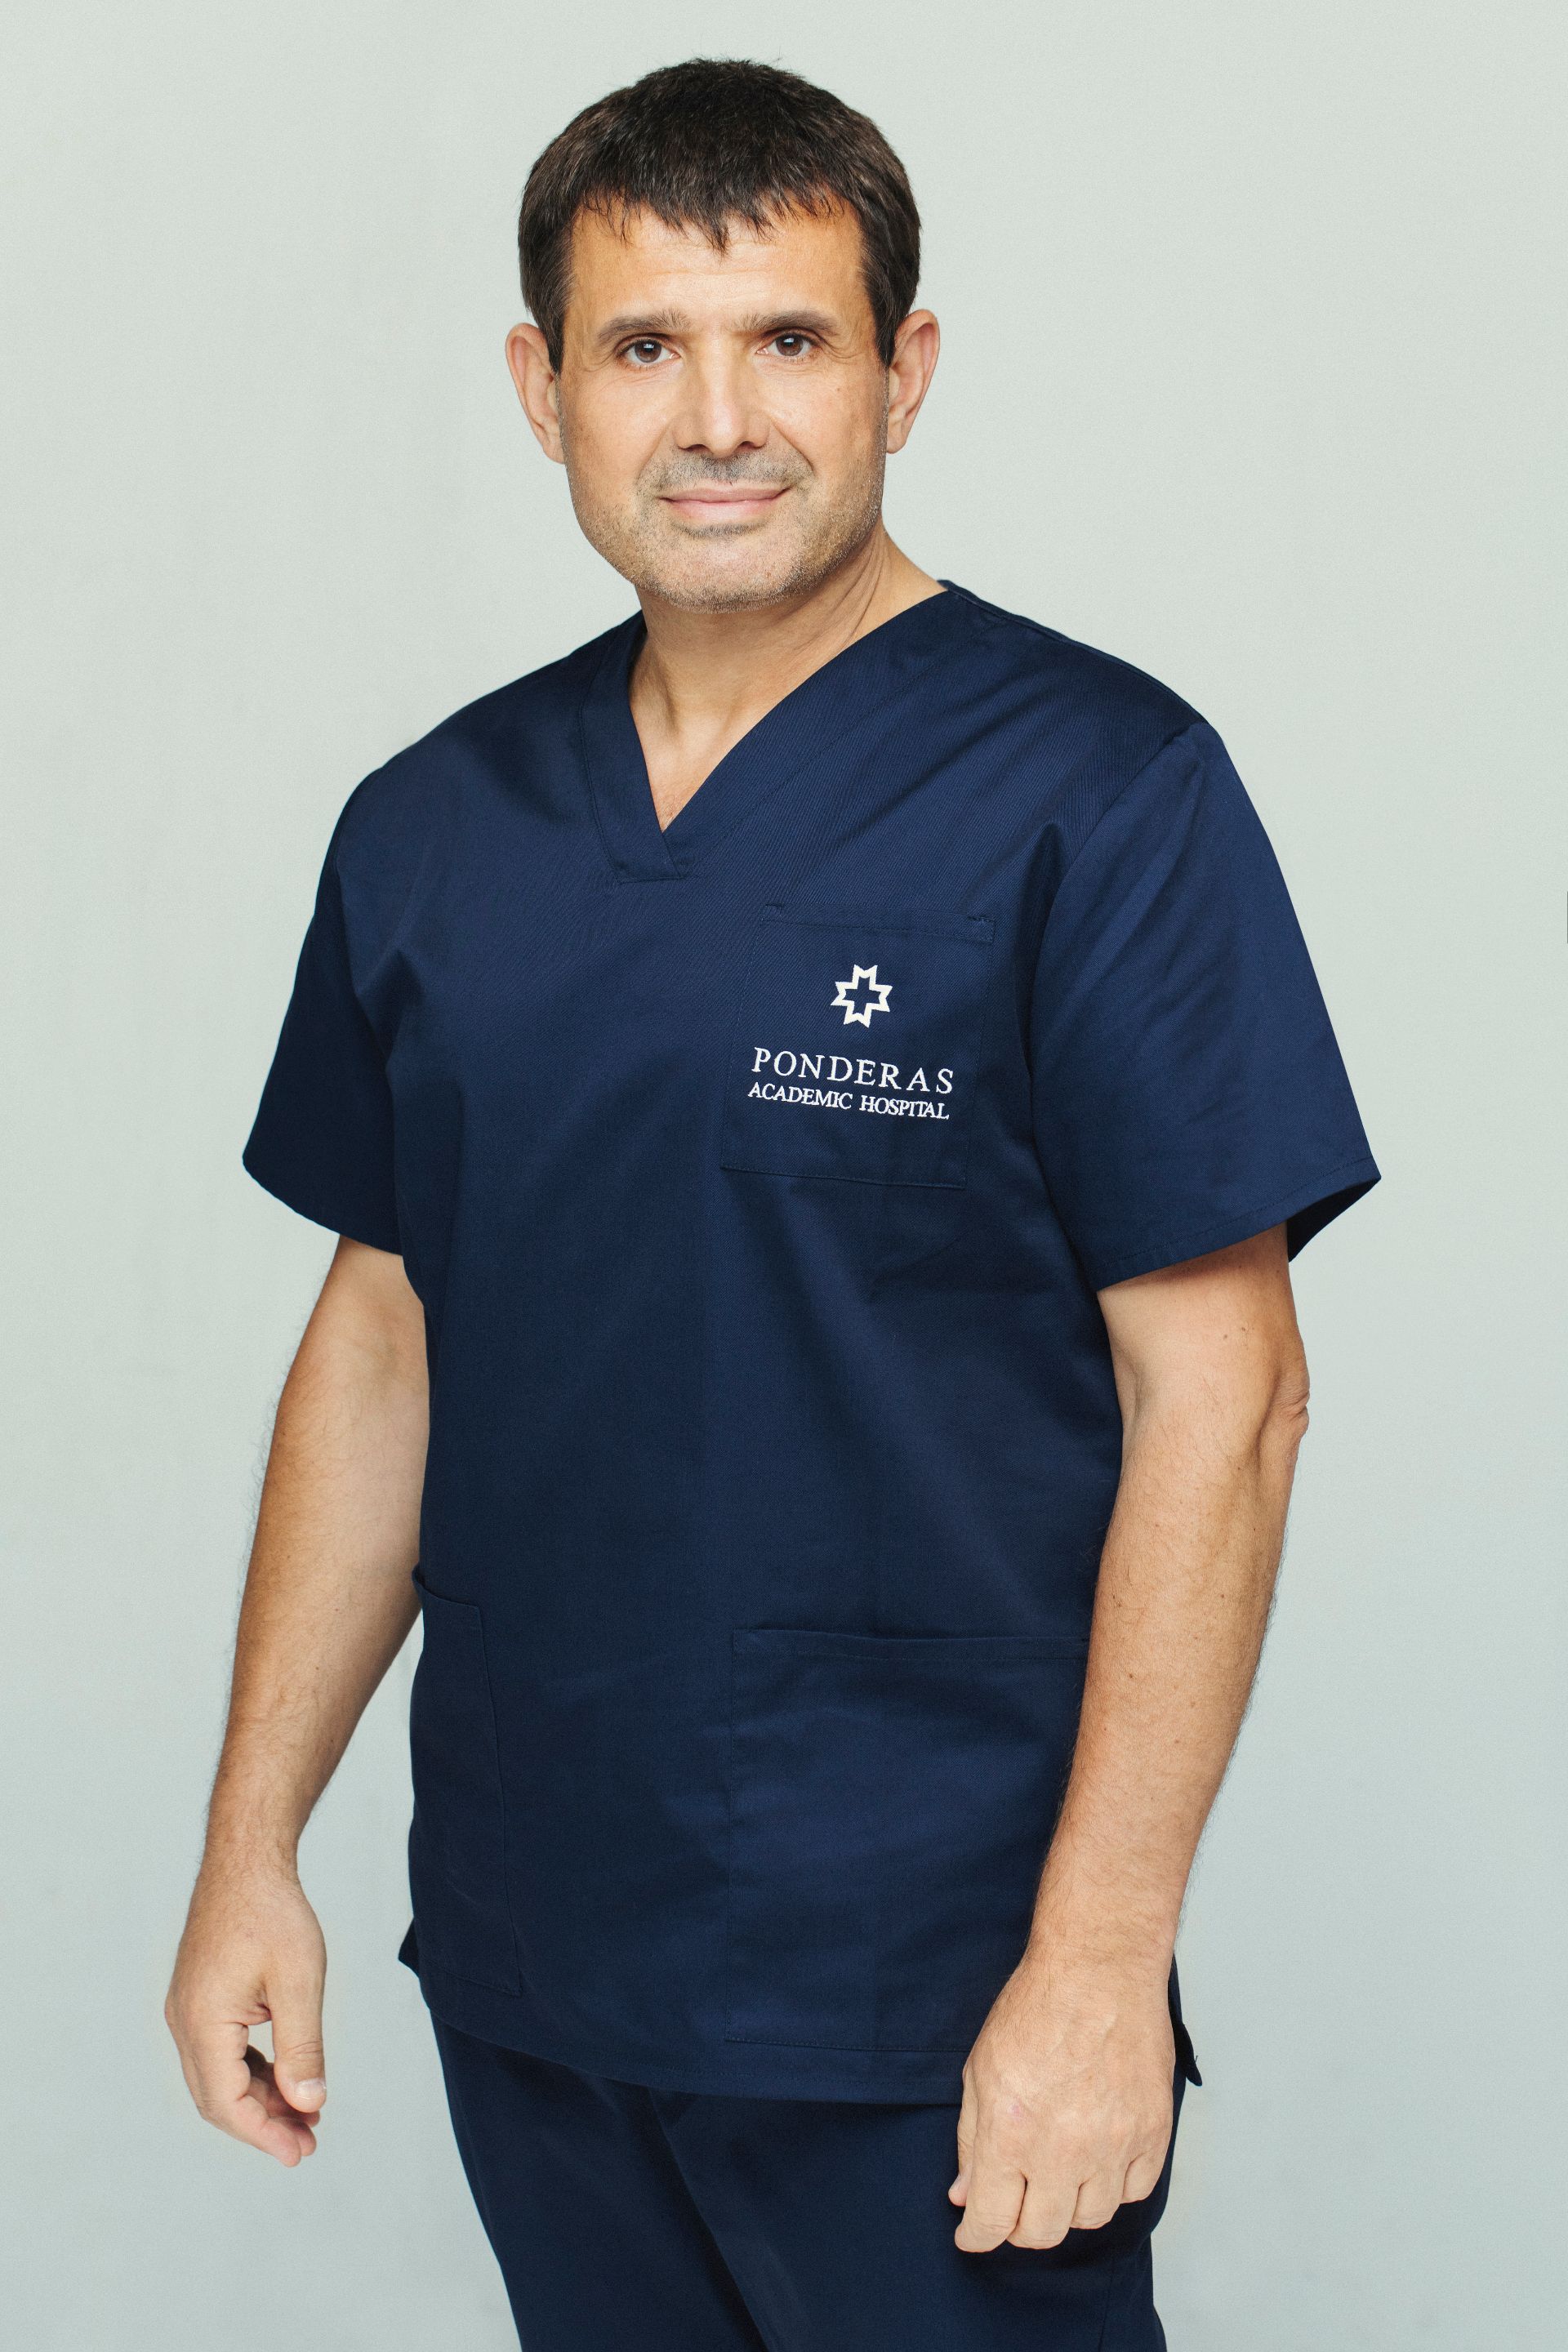 Dr. Catalin Copaescu